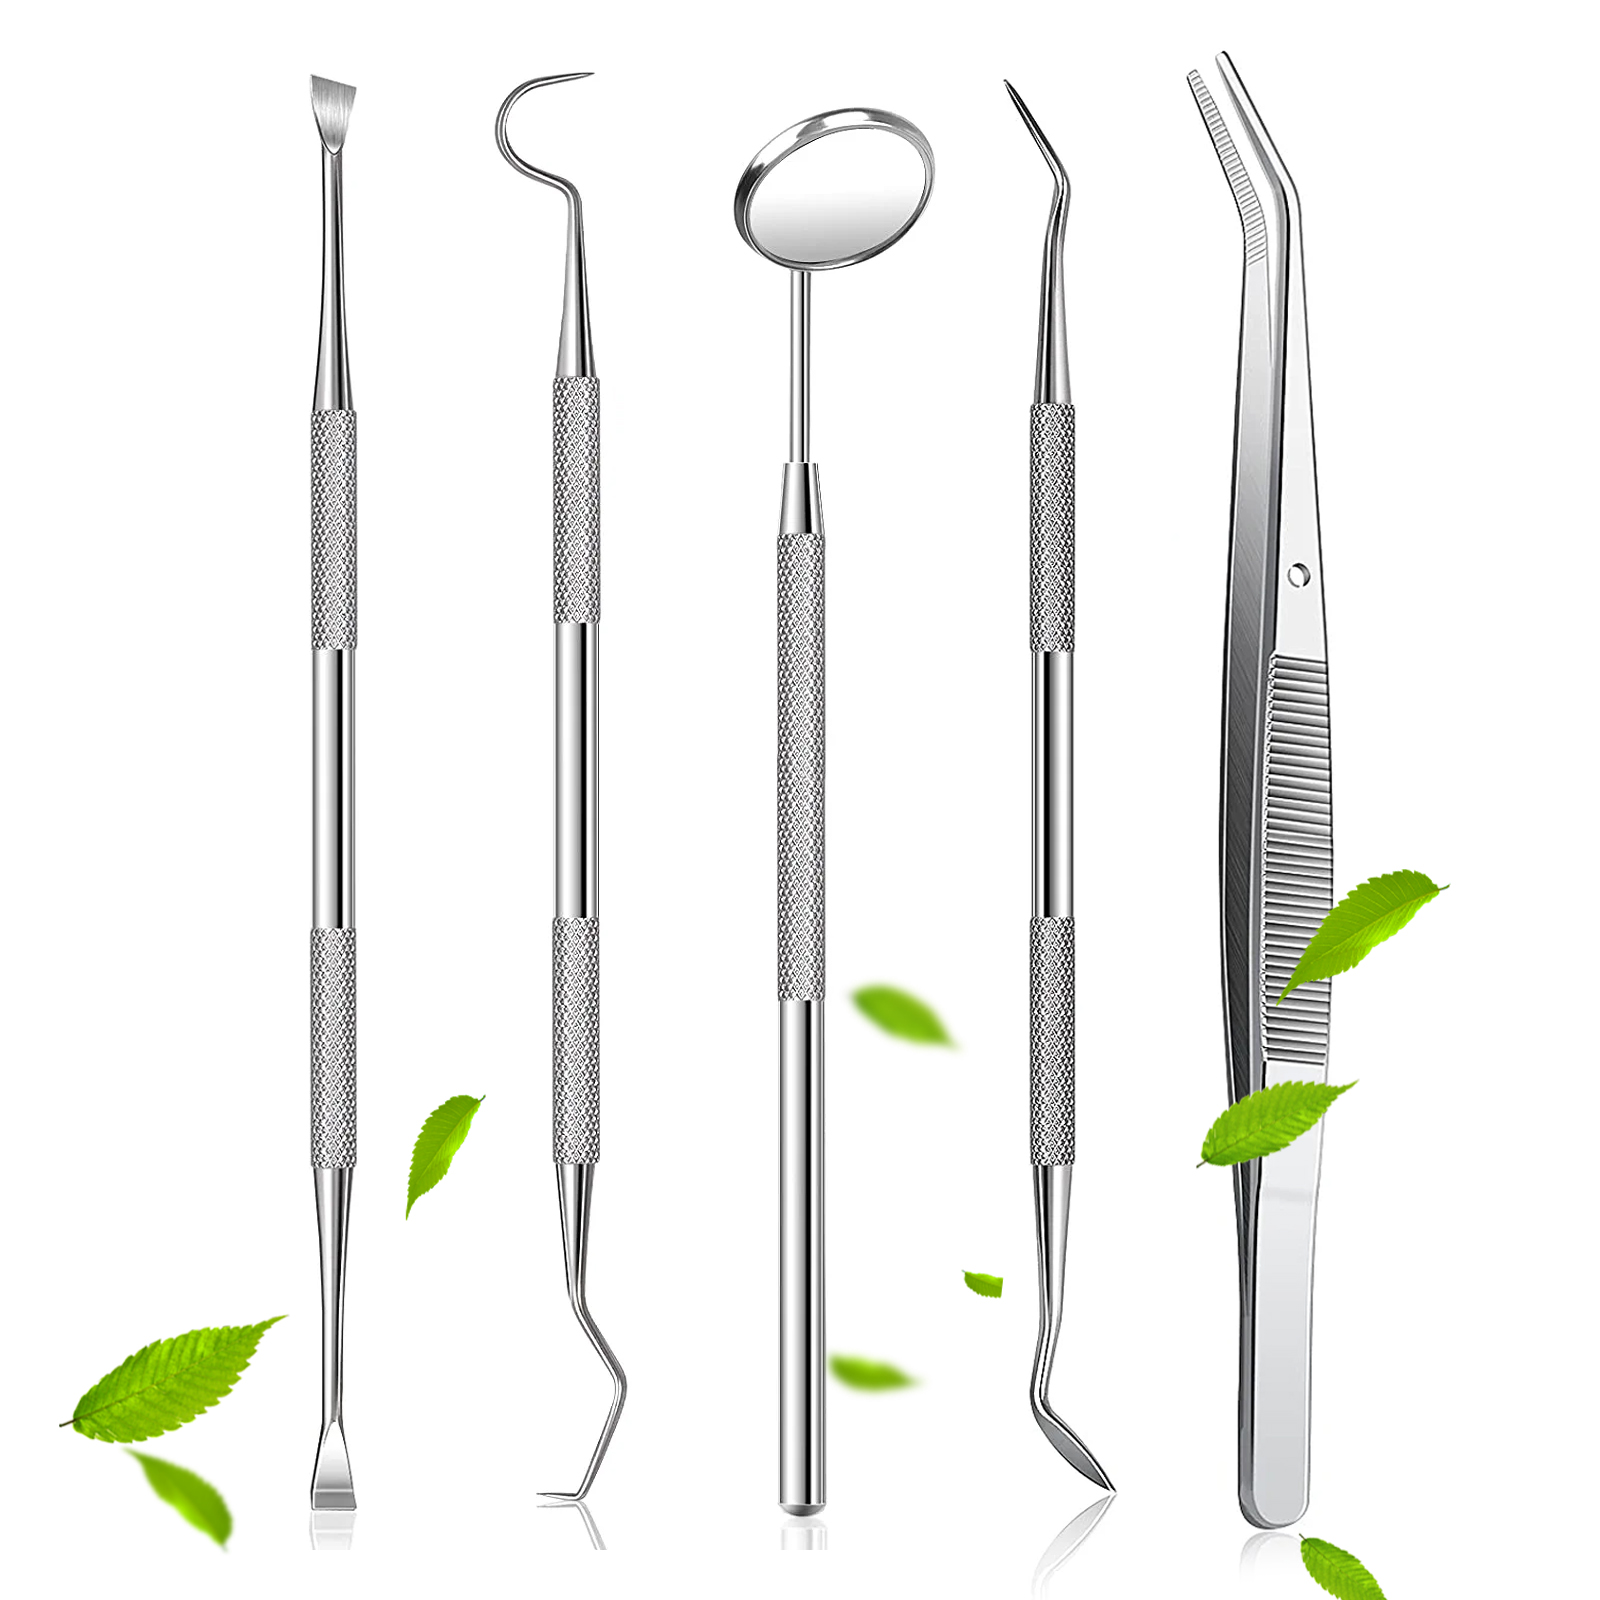 Dental Tools Set Dentist Teeth Kit Oral Clean Probe Stainless Steel Picks  GERMAN